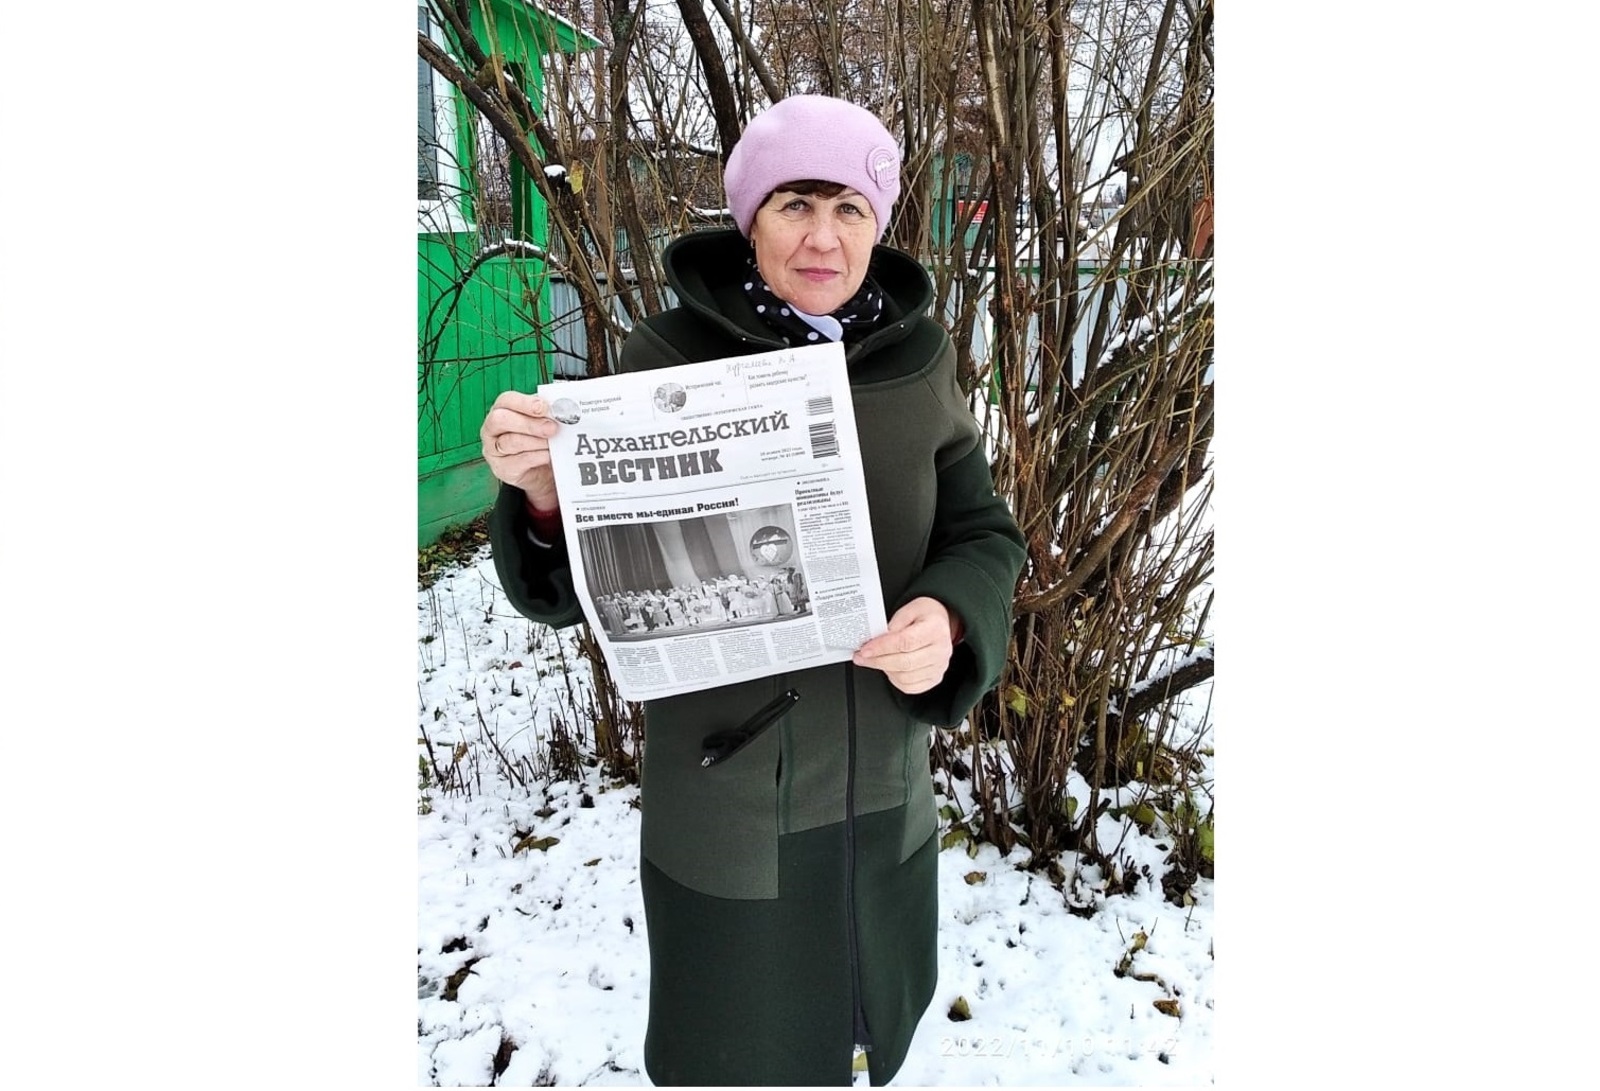 Нина Андреева: Районная газета занимает особое место в моей жизни